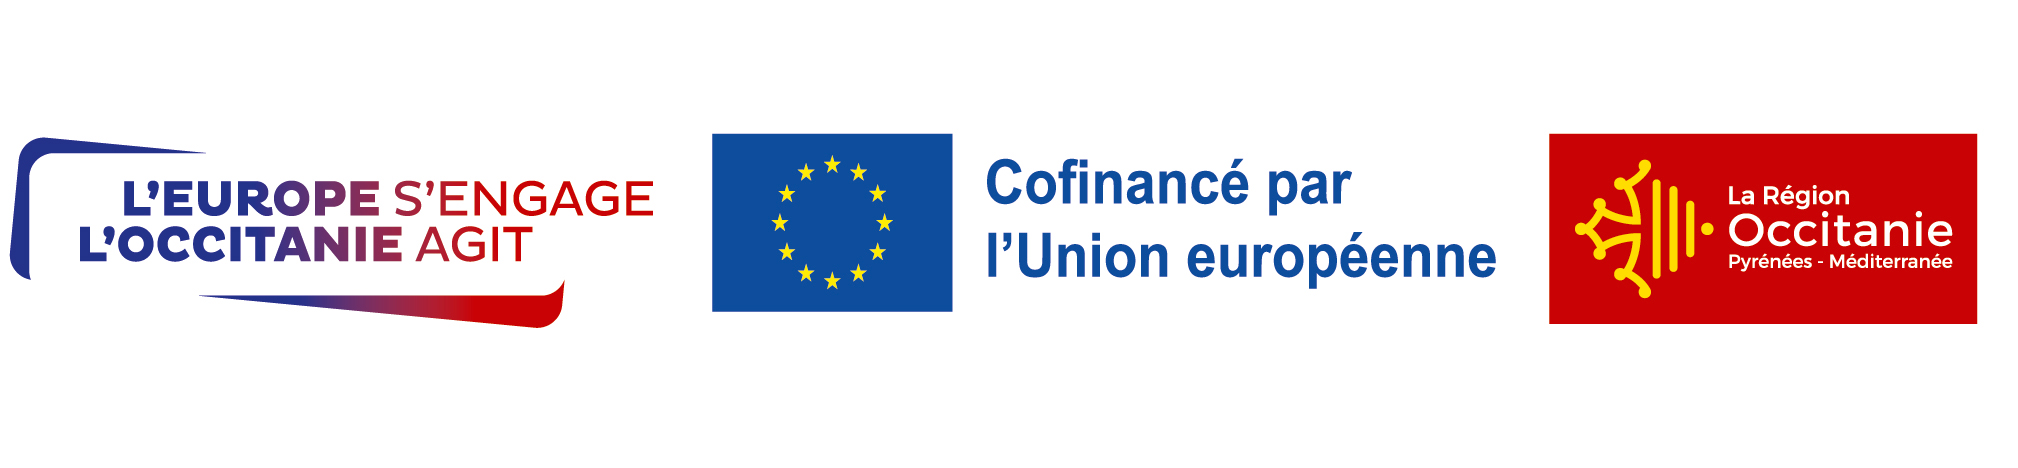 cofinance par L'union Européenne et la région Occitanie